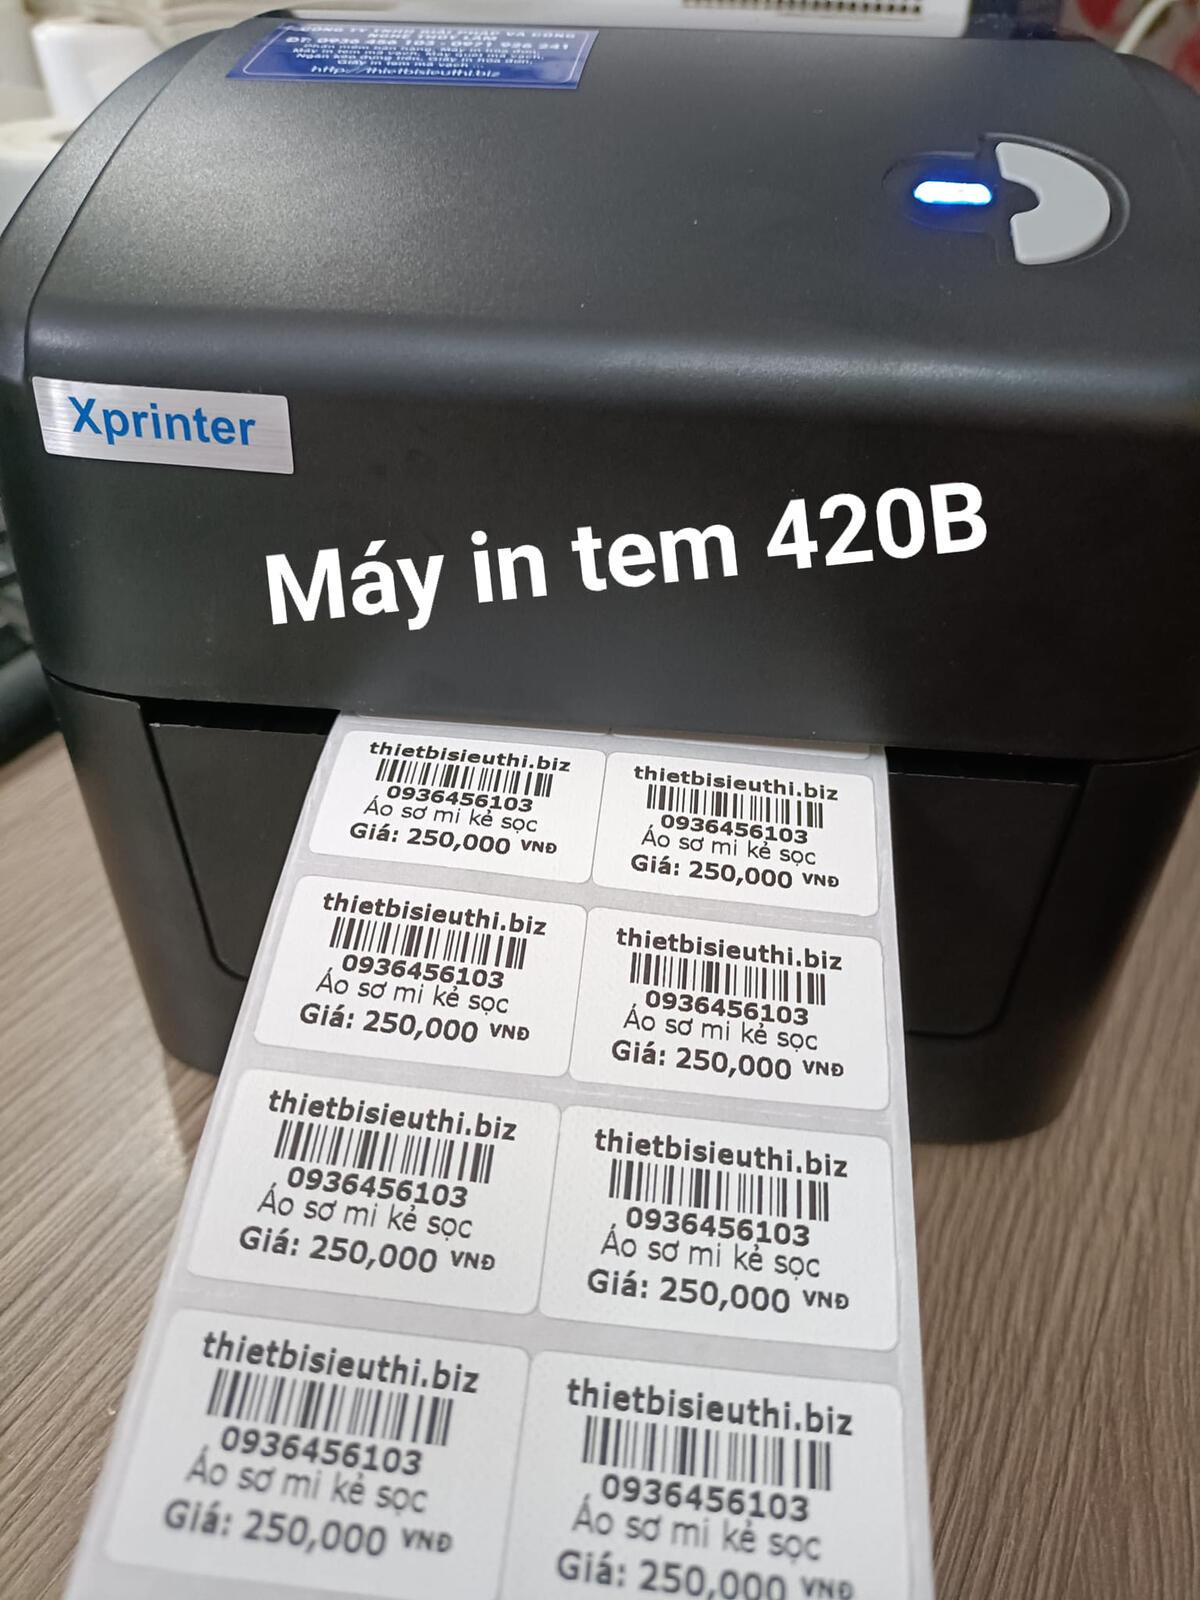 Làm thế nào để thiết lập khổ tem cho máy in Xprinter 420B?
